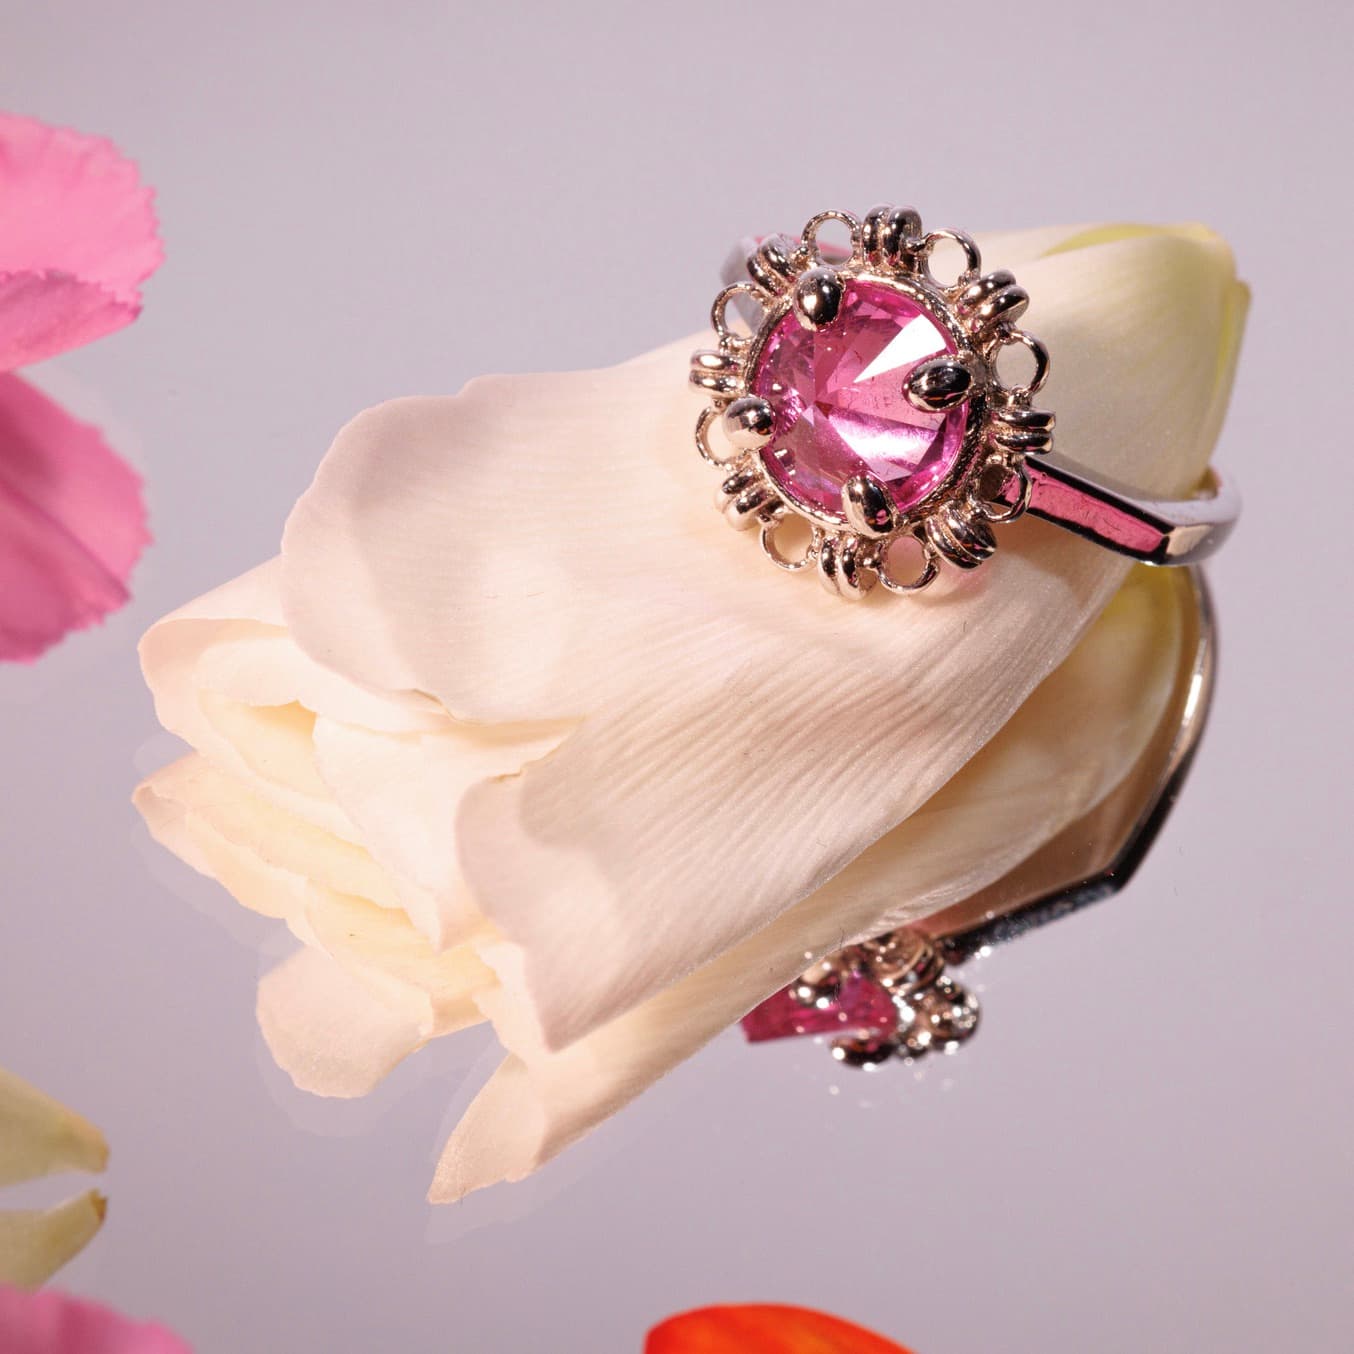 Vivaldi Spring Ring in Silver with Pink Topaz